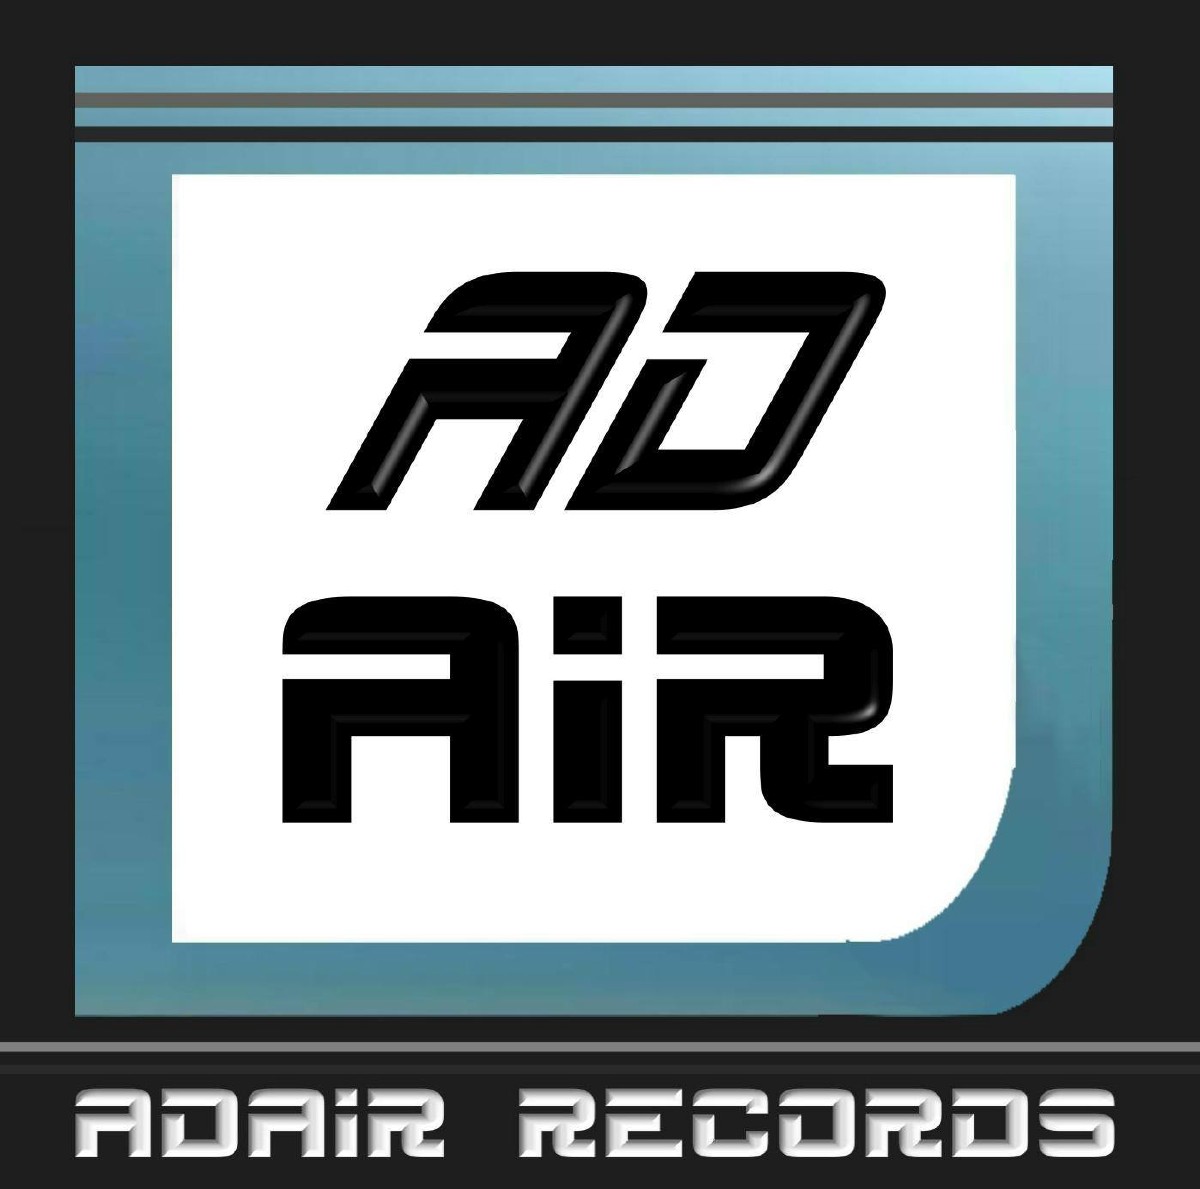 Andreas Bergersbacher Plattenfirma AD air records